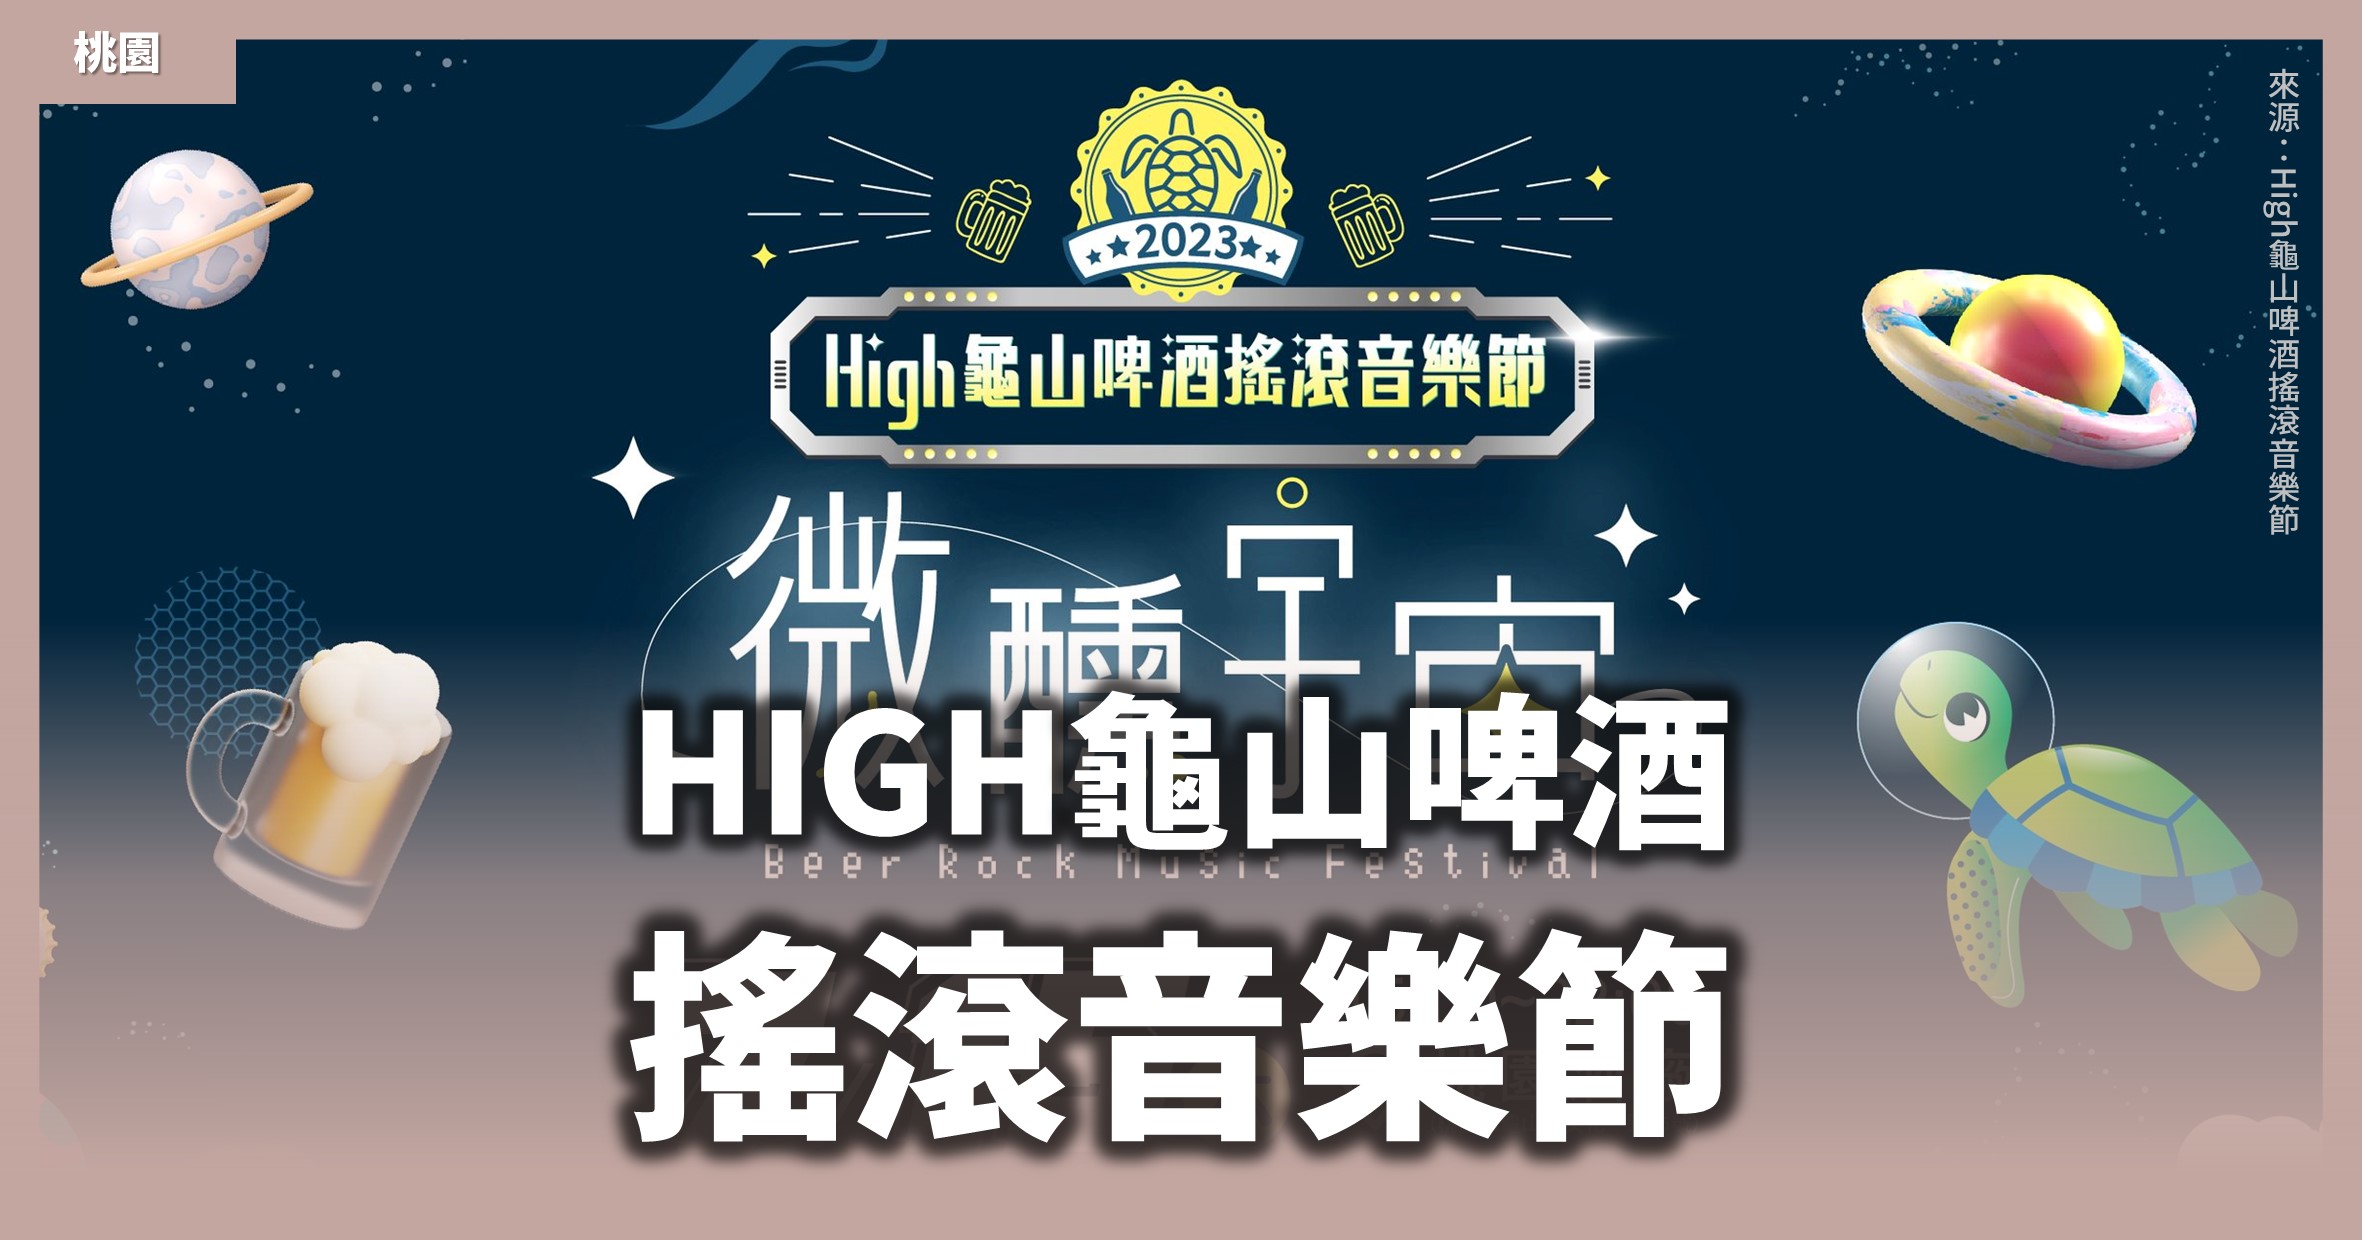 桃園活動》High龜山啤酒搖滾音樂節「微醺宇宙」：2場探險、5大主題、7組藝人卡司